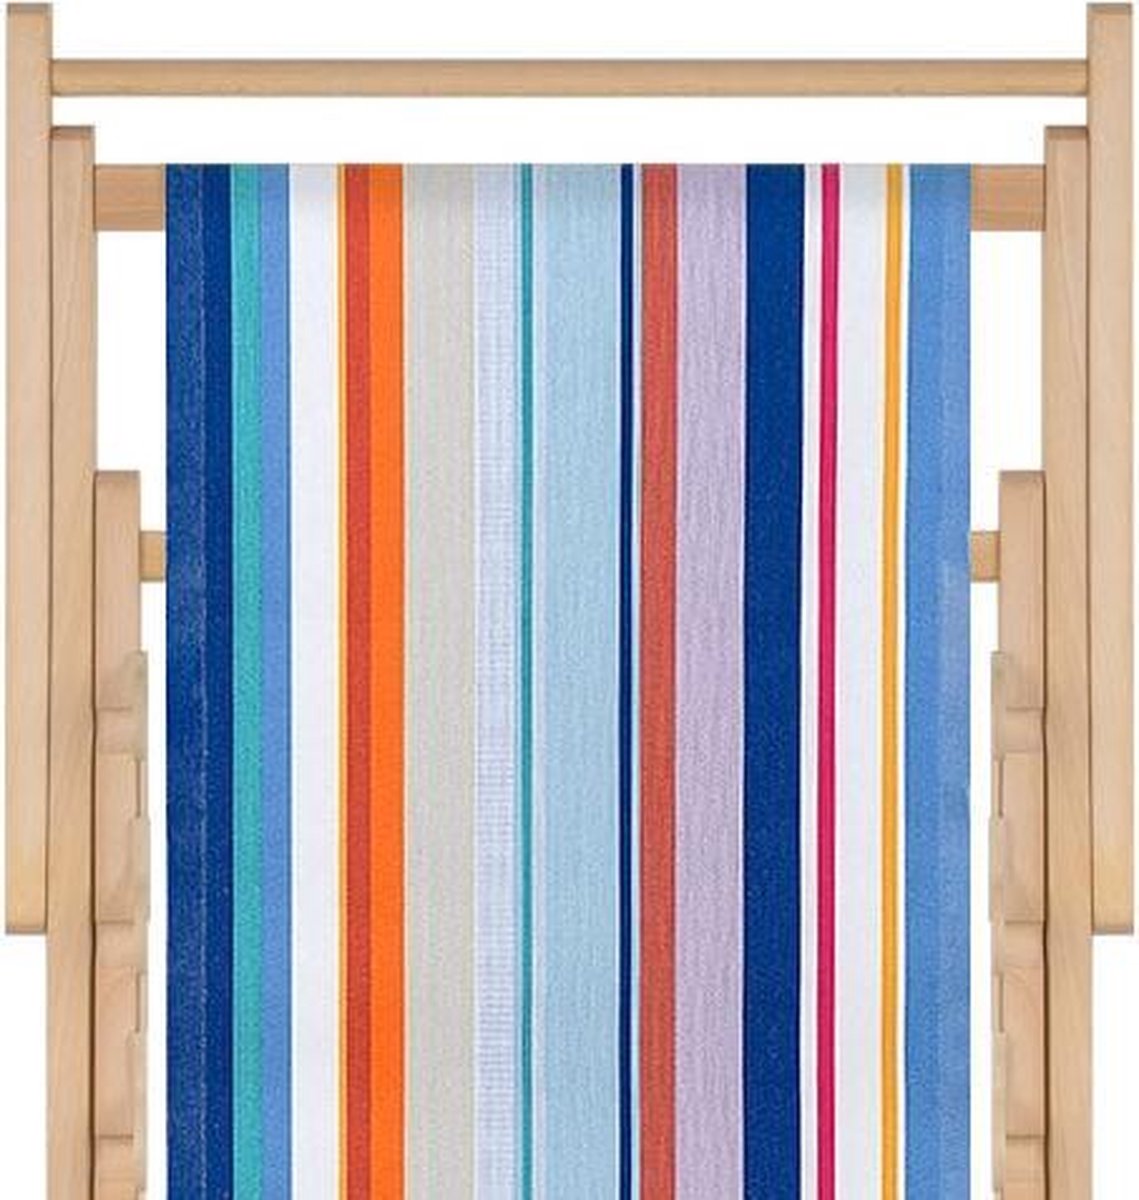 Houten strandstoel met hoogwaardige stof in katoen - massief beukehout - dubbelgeweven katoen Canet en rousillon - opvouwbaar - verstelbaar in 3 standen - zonder armleuning - afneembare hoes - multicolour - strepenpatroon